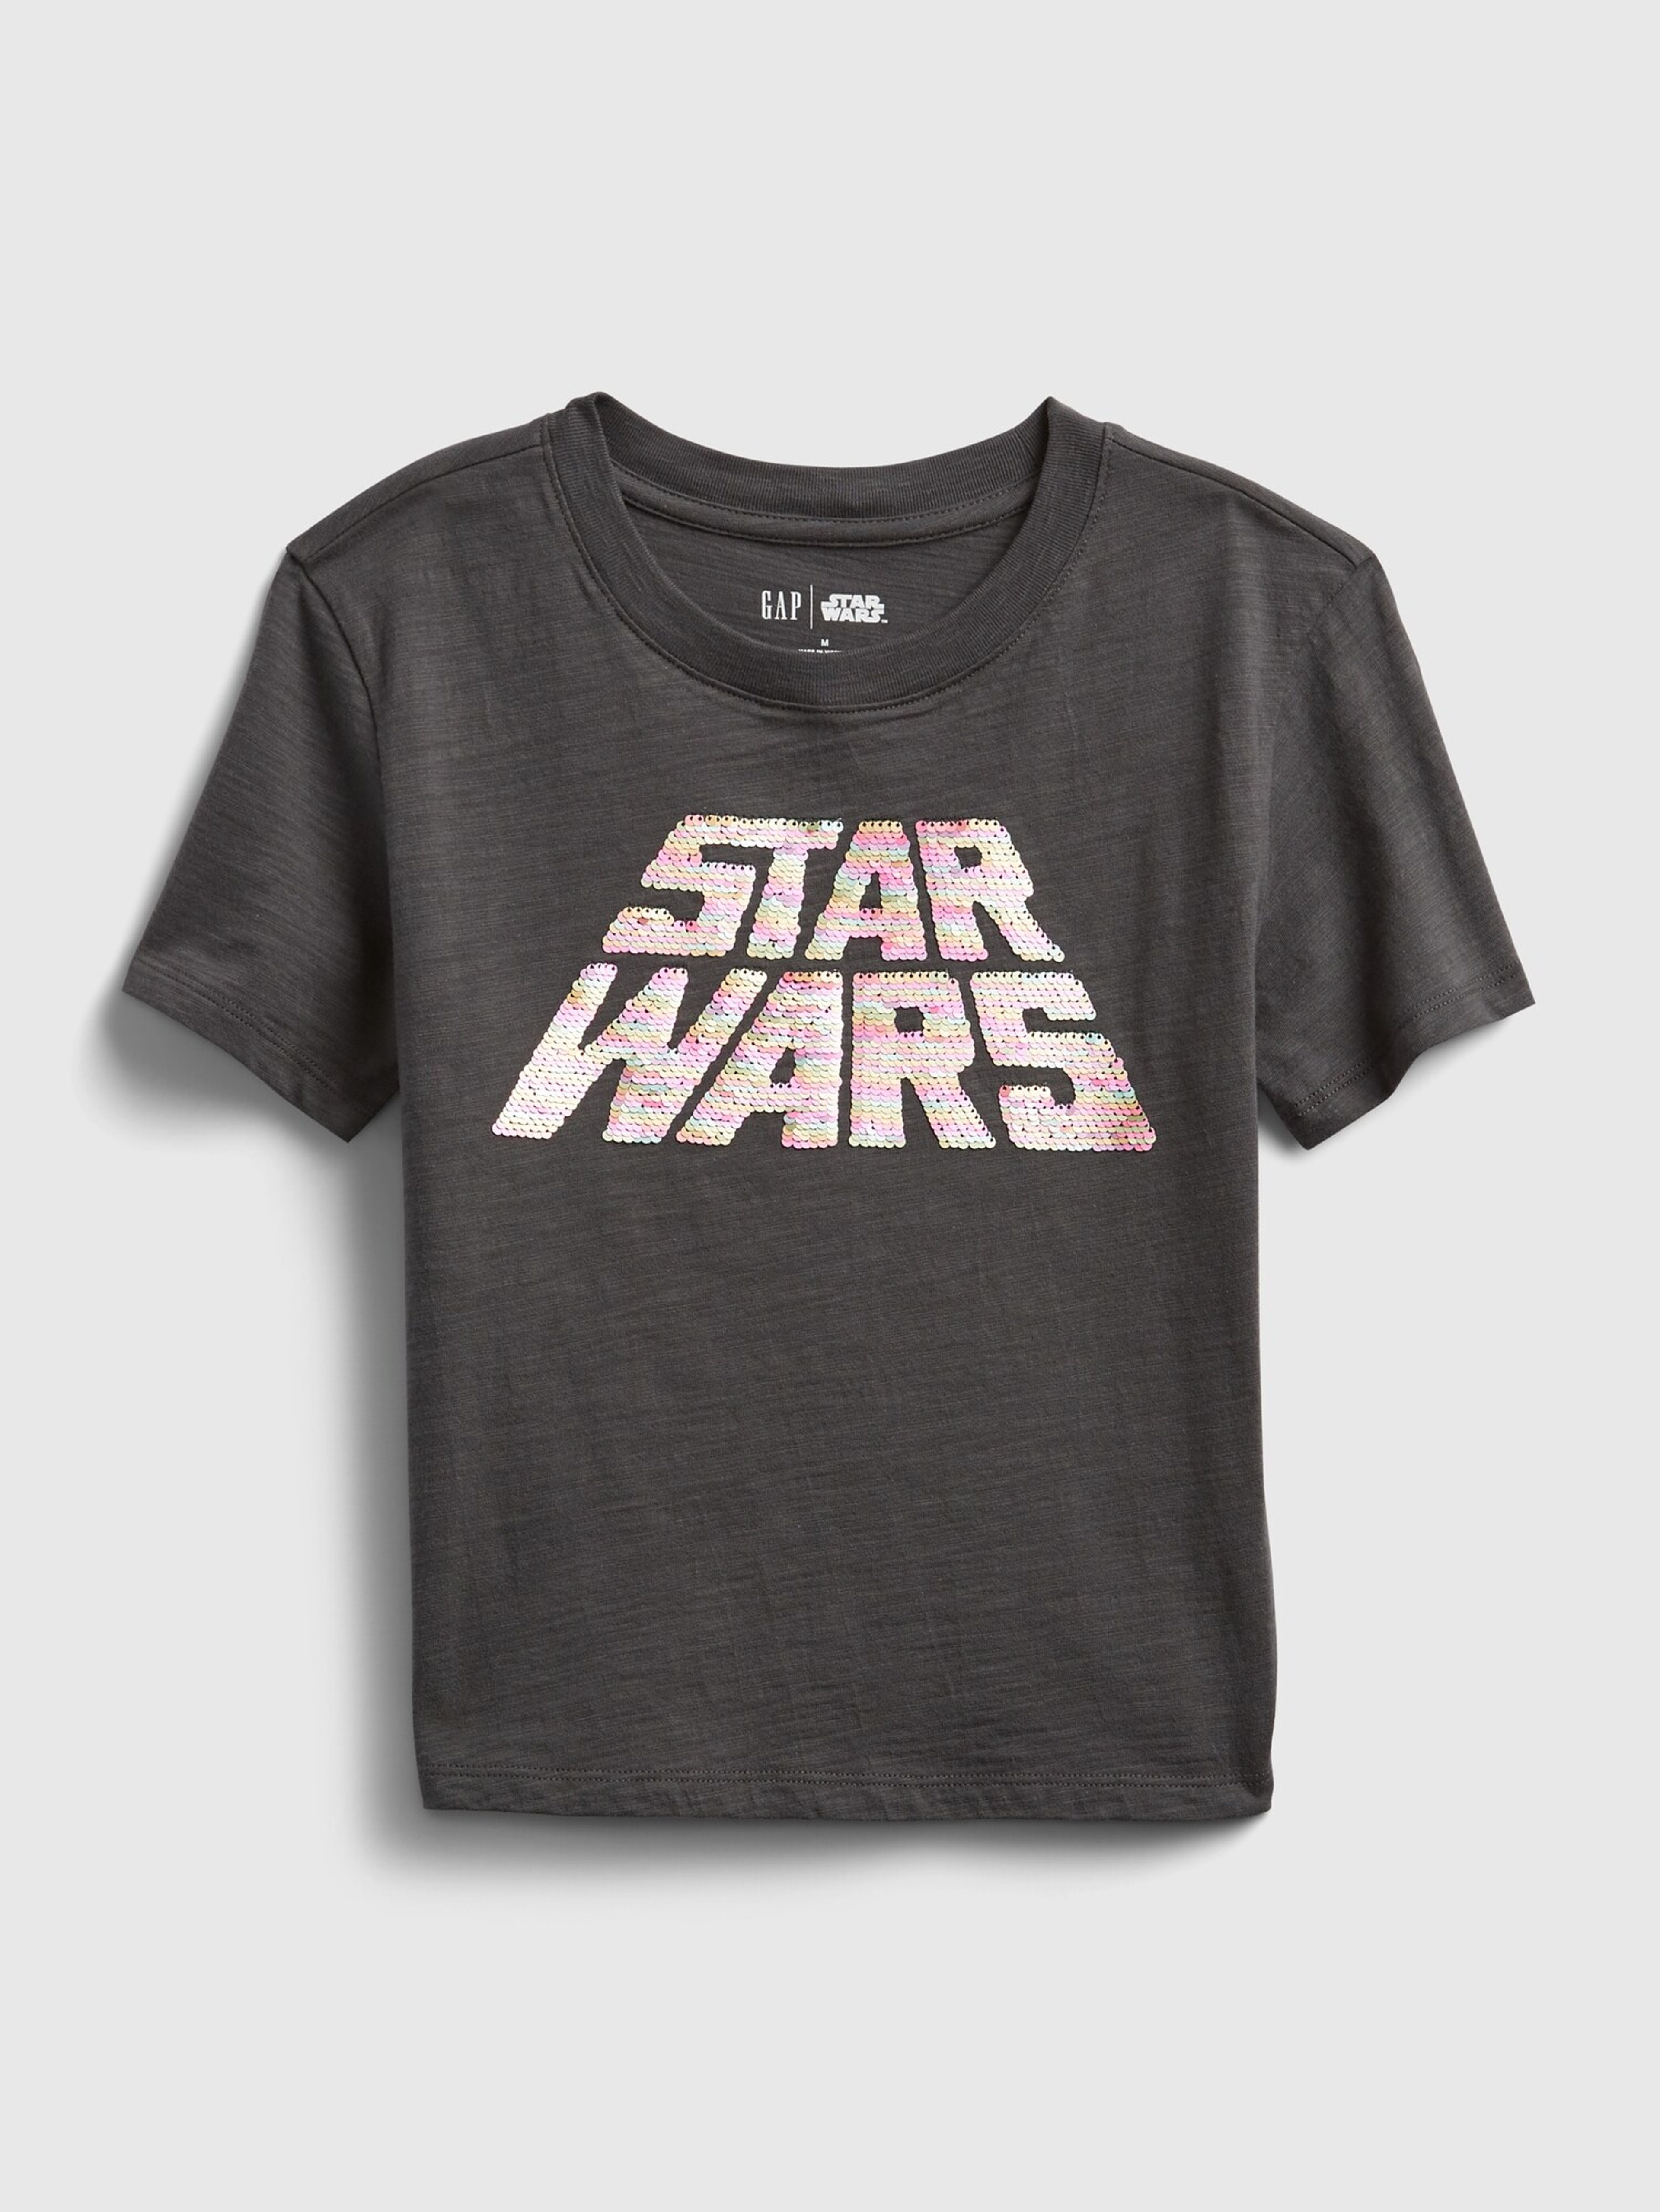 Dětské tričko GAP & Star Wars